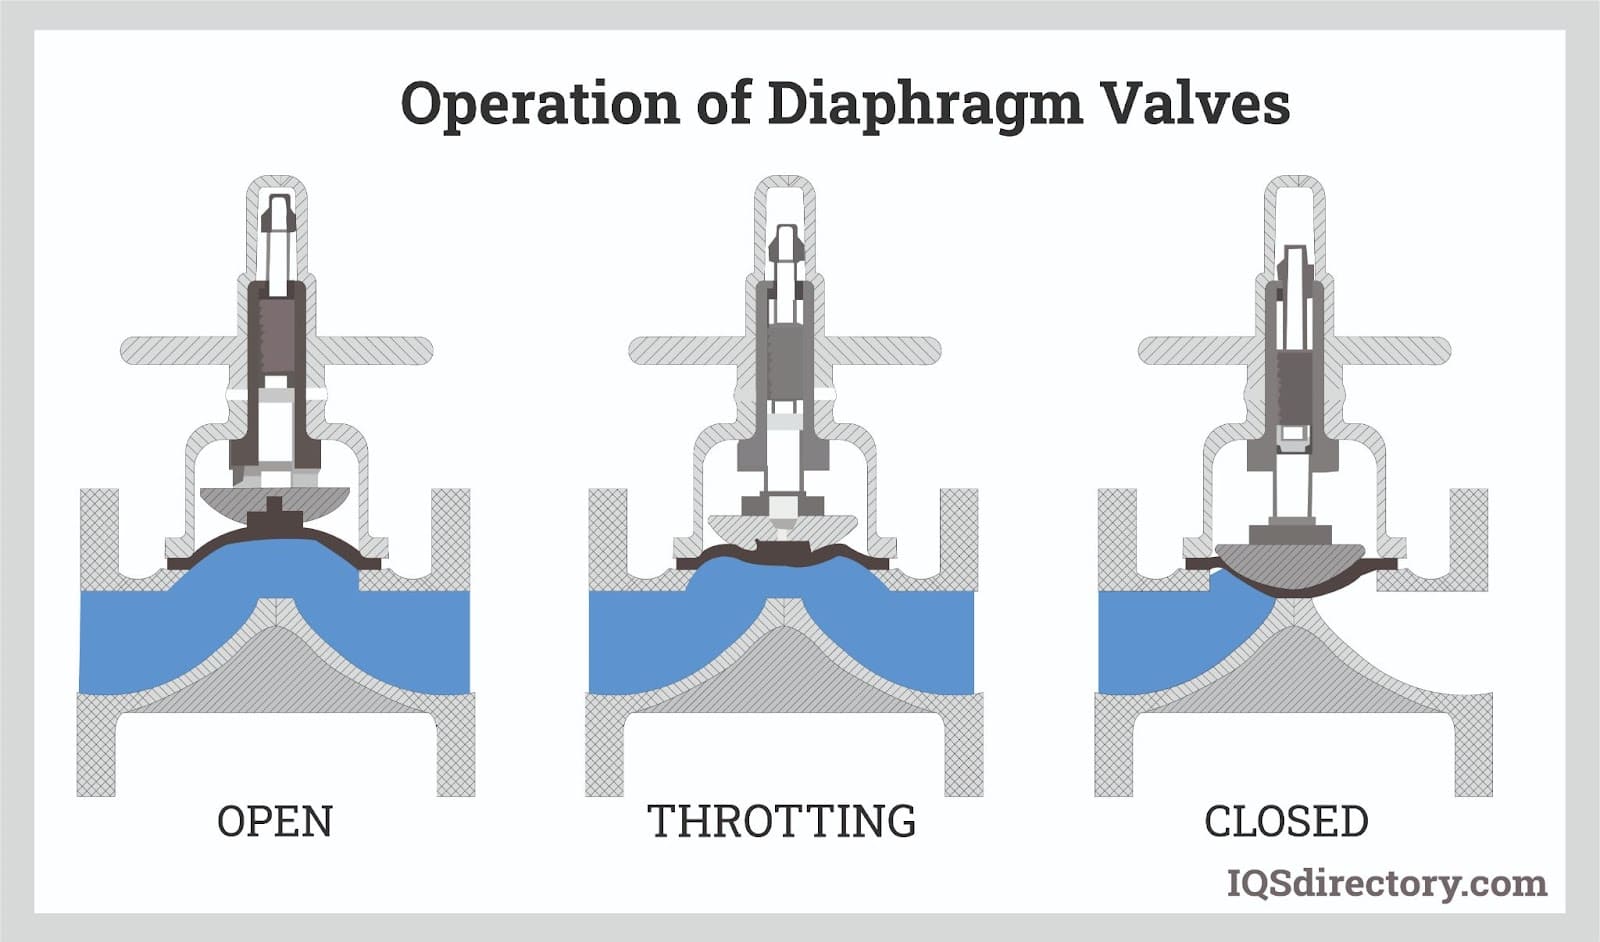 Diaphragm Pump Parts List + Function & Application